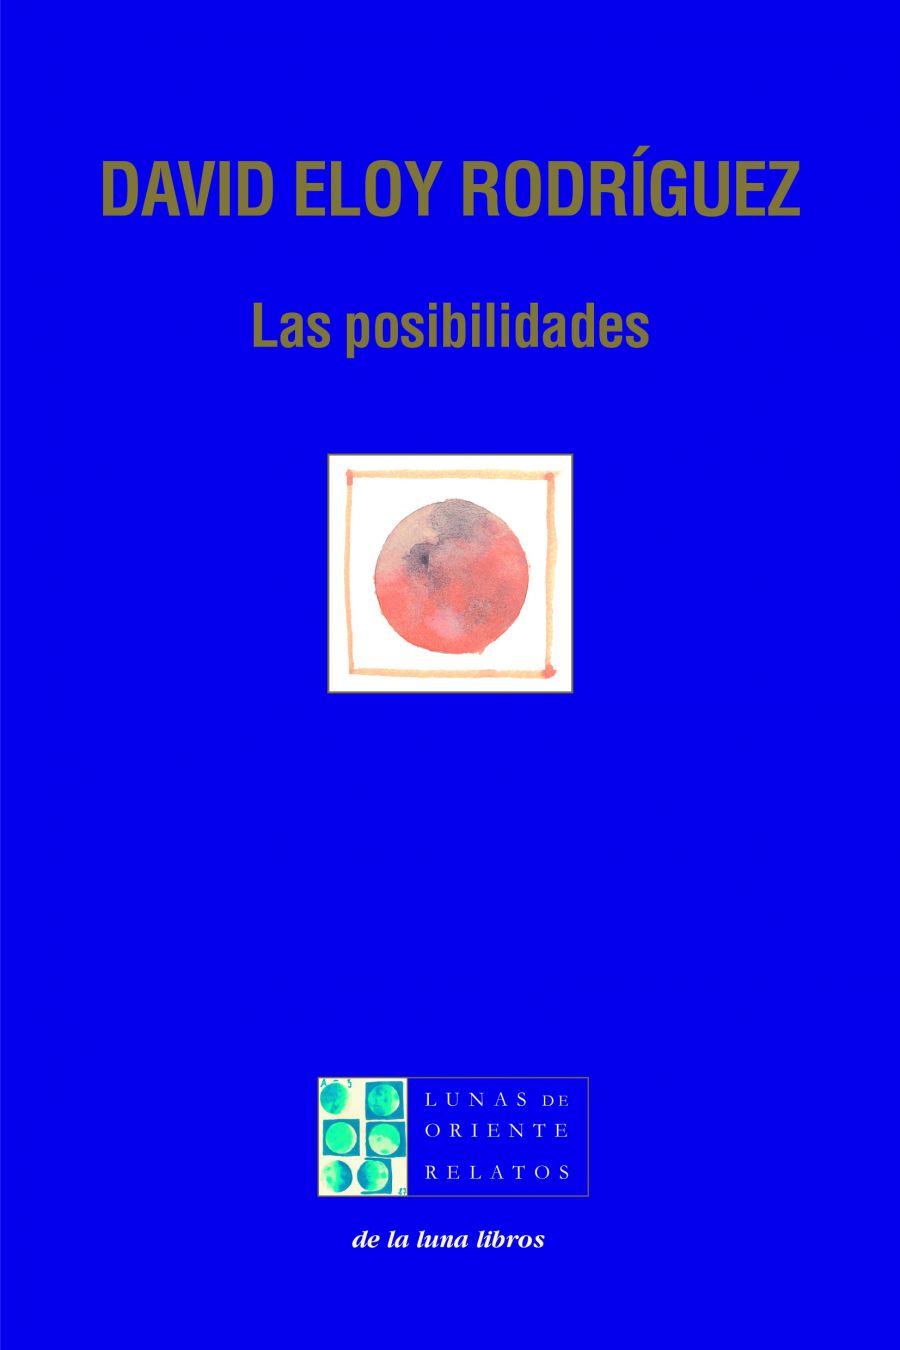 Presentación en la Feria del Libro de Plasencia de  los libros de David Eloy Rodríguez y Montaña Campón